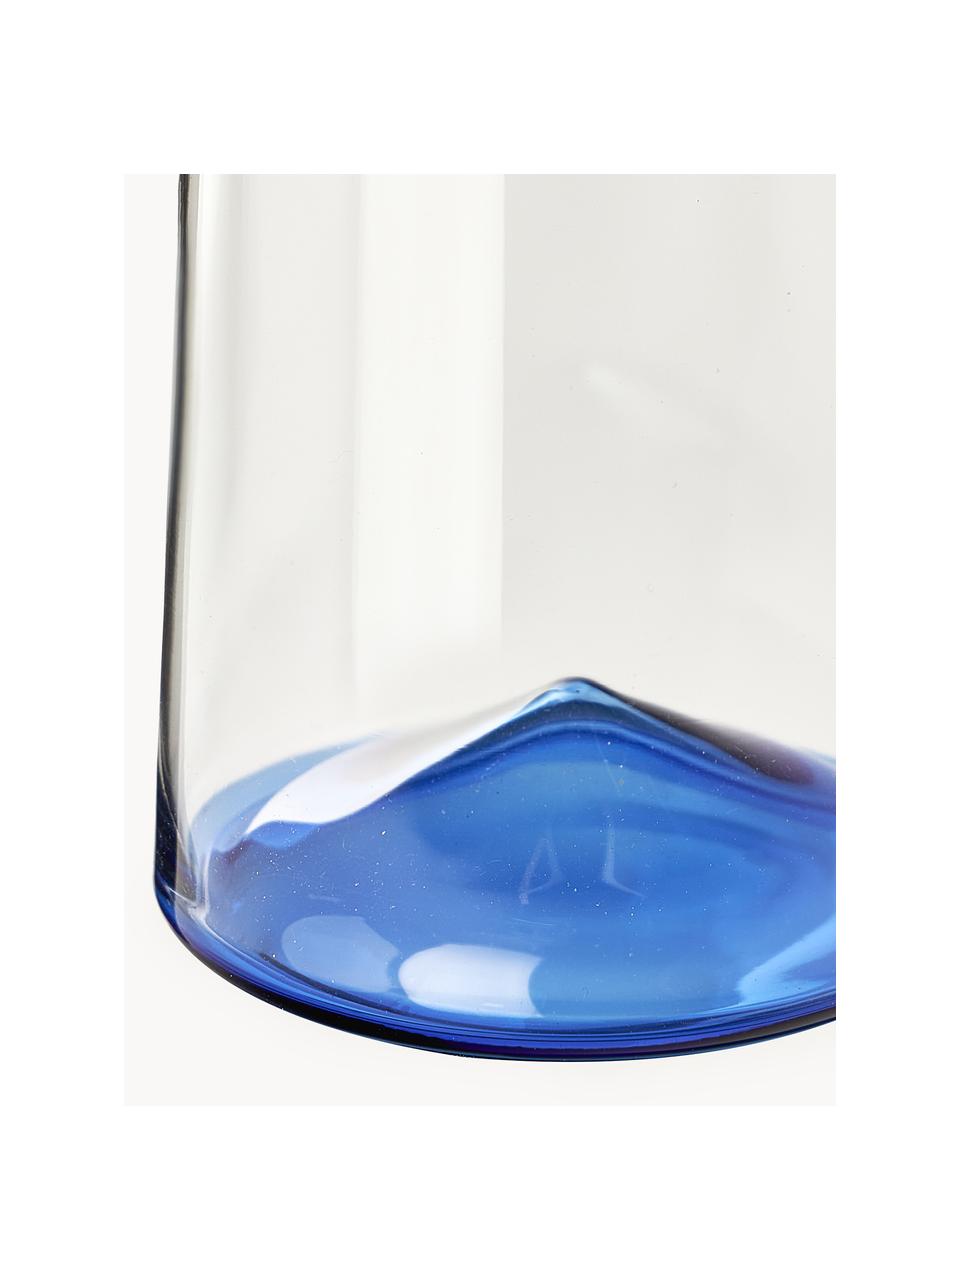 Ručne fúkané poháre na nápoje Hadley, 4 ks, Borosilikátové sklo, ručne fúkané

Objavte všestrannosť riadu z borosilikátového skla pre váš domov!
Borosilikátové sklo je kvalitný, spoľahlivý a robustný materiál. Vyznačuje sa mimoriadnou tepelnou odolnosťou, a preto odolá extrémnym teplotám. Je preto vhodný najmä na horúce nápoje. Borosilikátové sklo je v porovnaní s tradičným sklom vďaka svojmu zloženiu a štruktúre odolnejšie voči rozbitiu a prasknutiu., Priehľadná, modrá, Ø 8 x V 12 cm, 360 ml